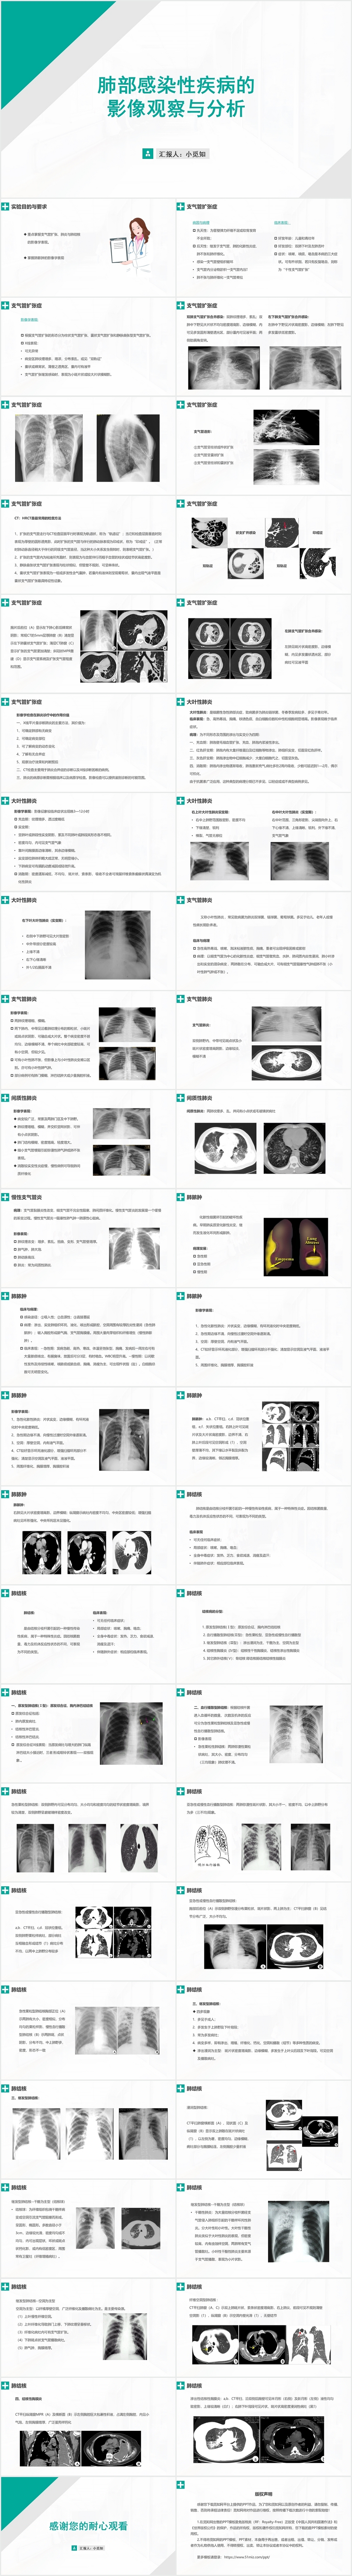 绿色商务风肺部感染护理查房肺部疾病影像观察与分析PPT模板